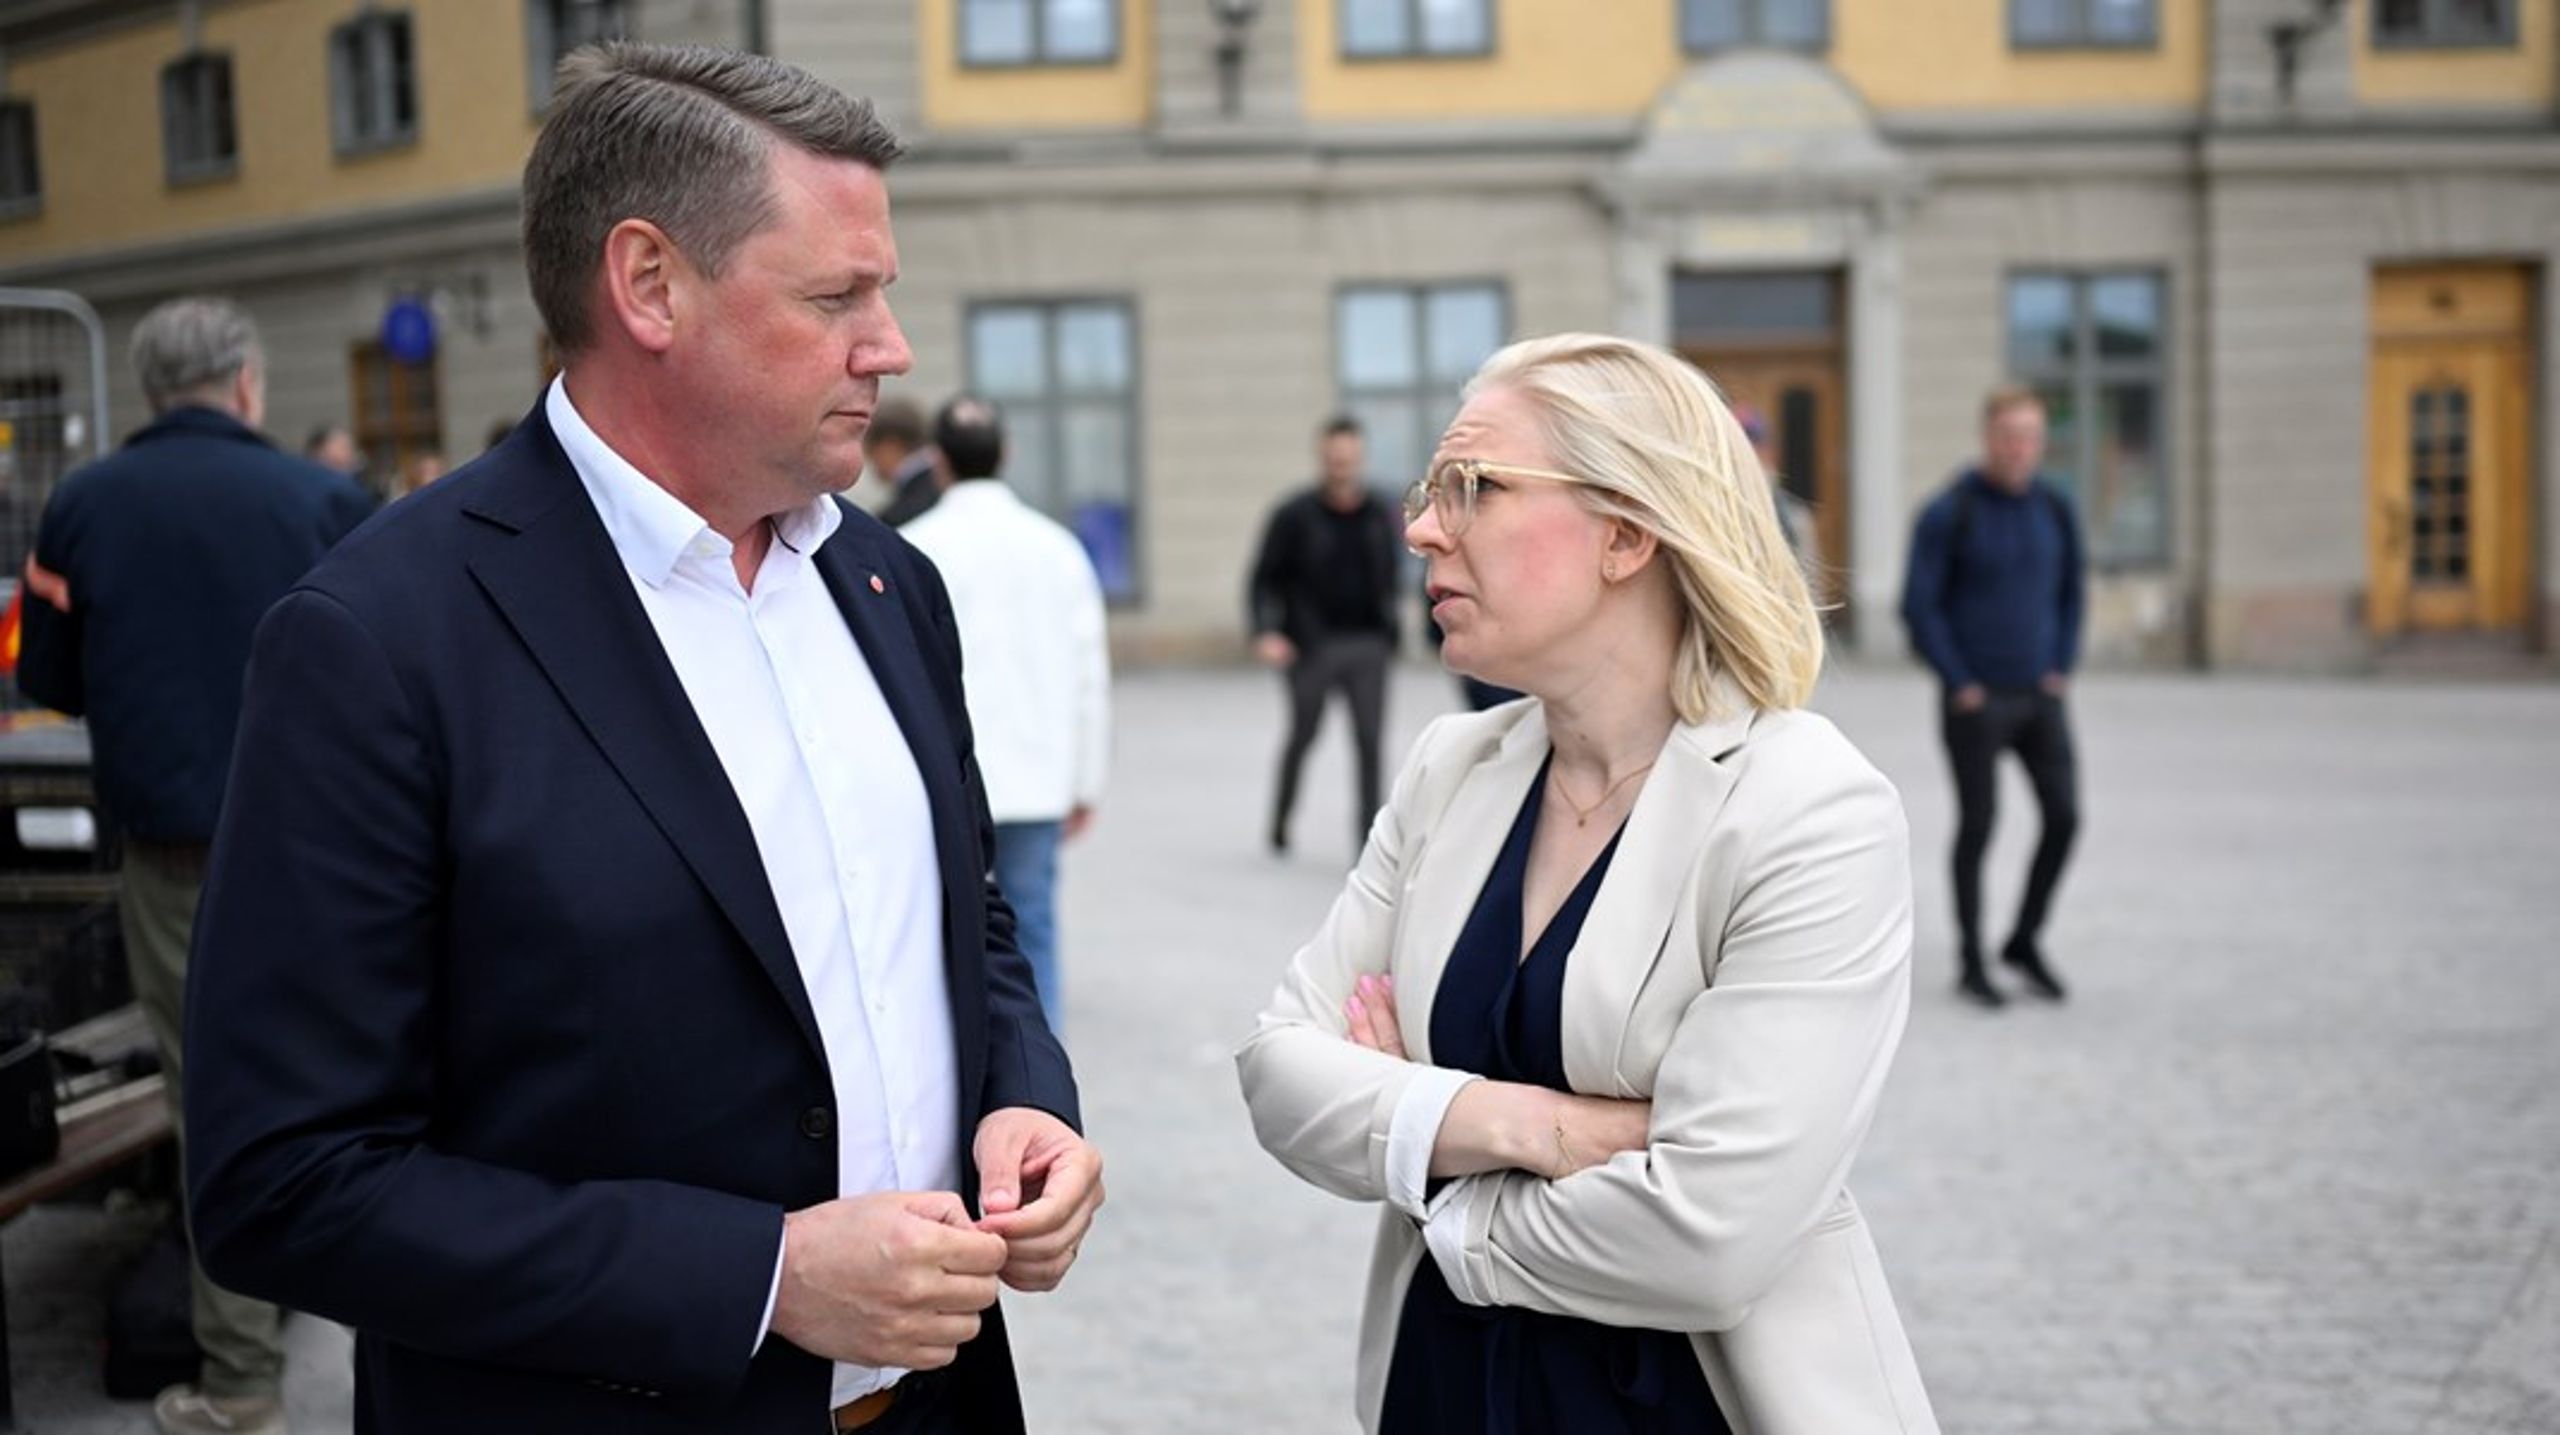 Socialdemokraternas partisekreterare Tobias Baudin och Centerpartiets partisekreterare Karin Ernlund är båda missnöjda efter mötet med riksdagspartiernas partisekreterare.